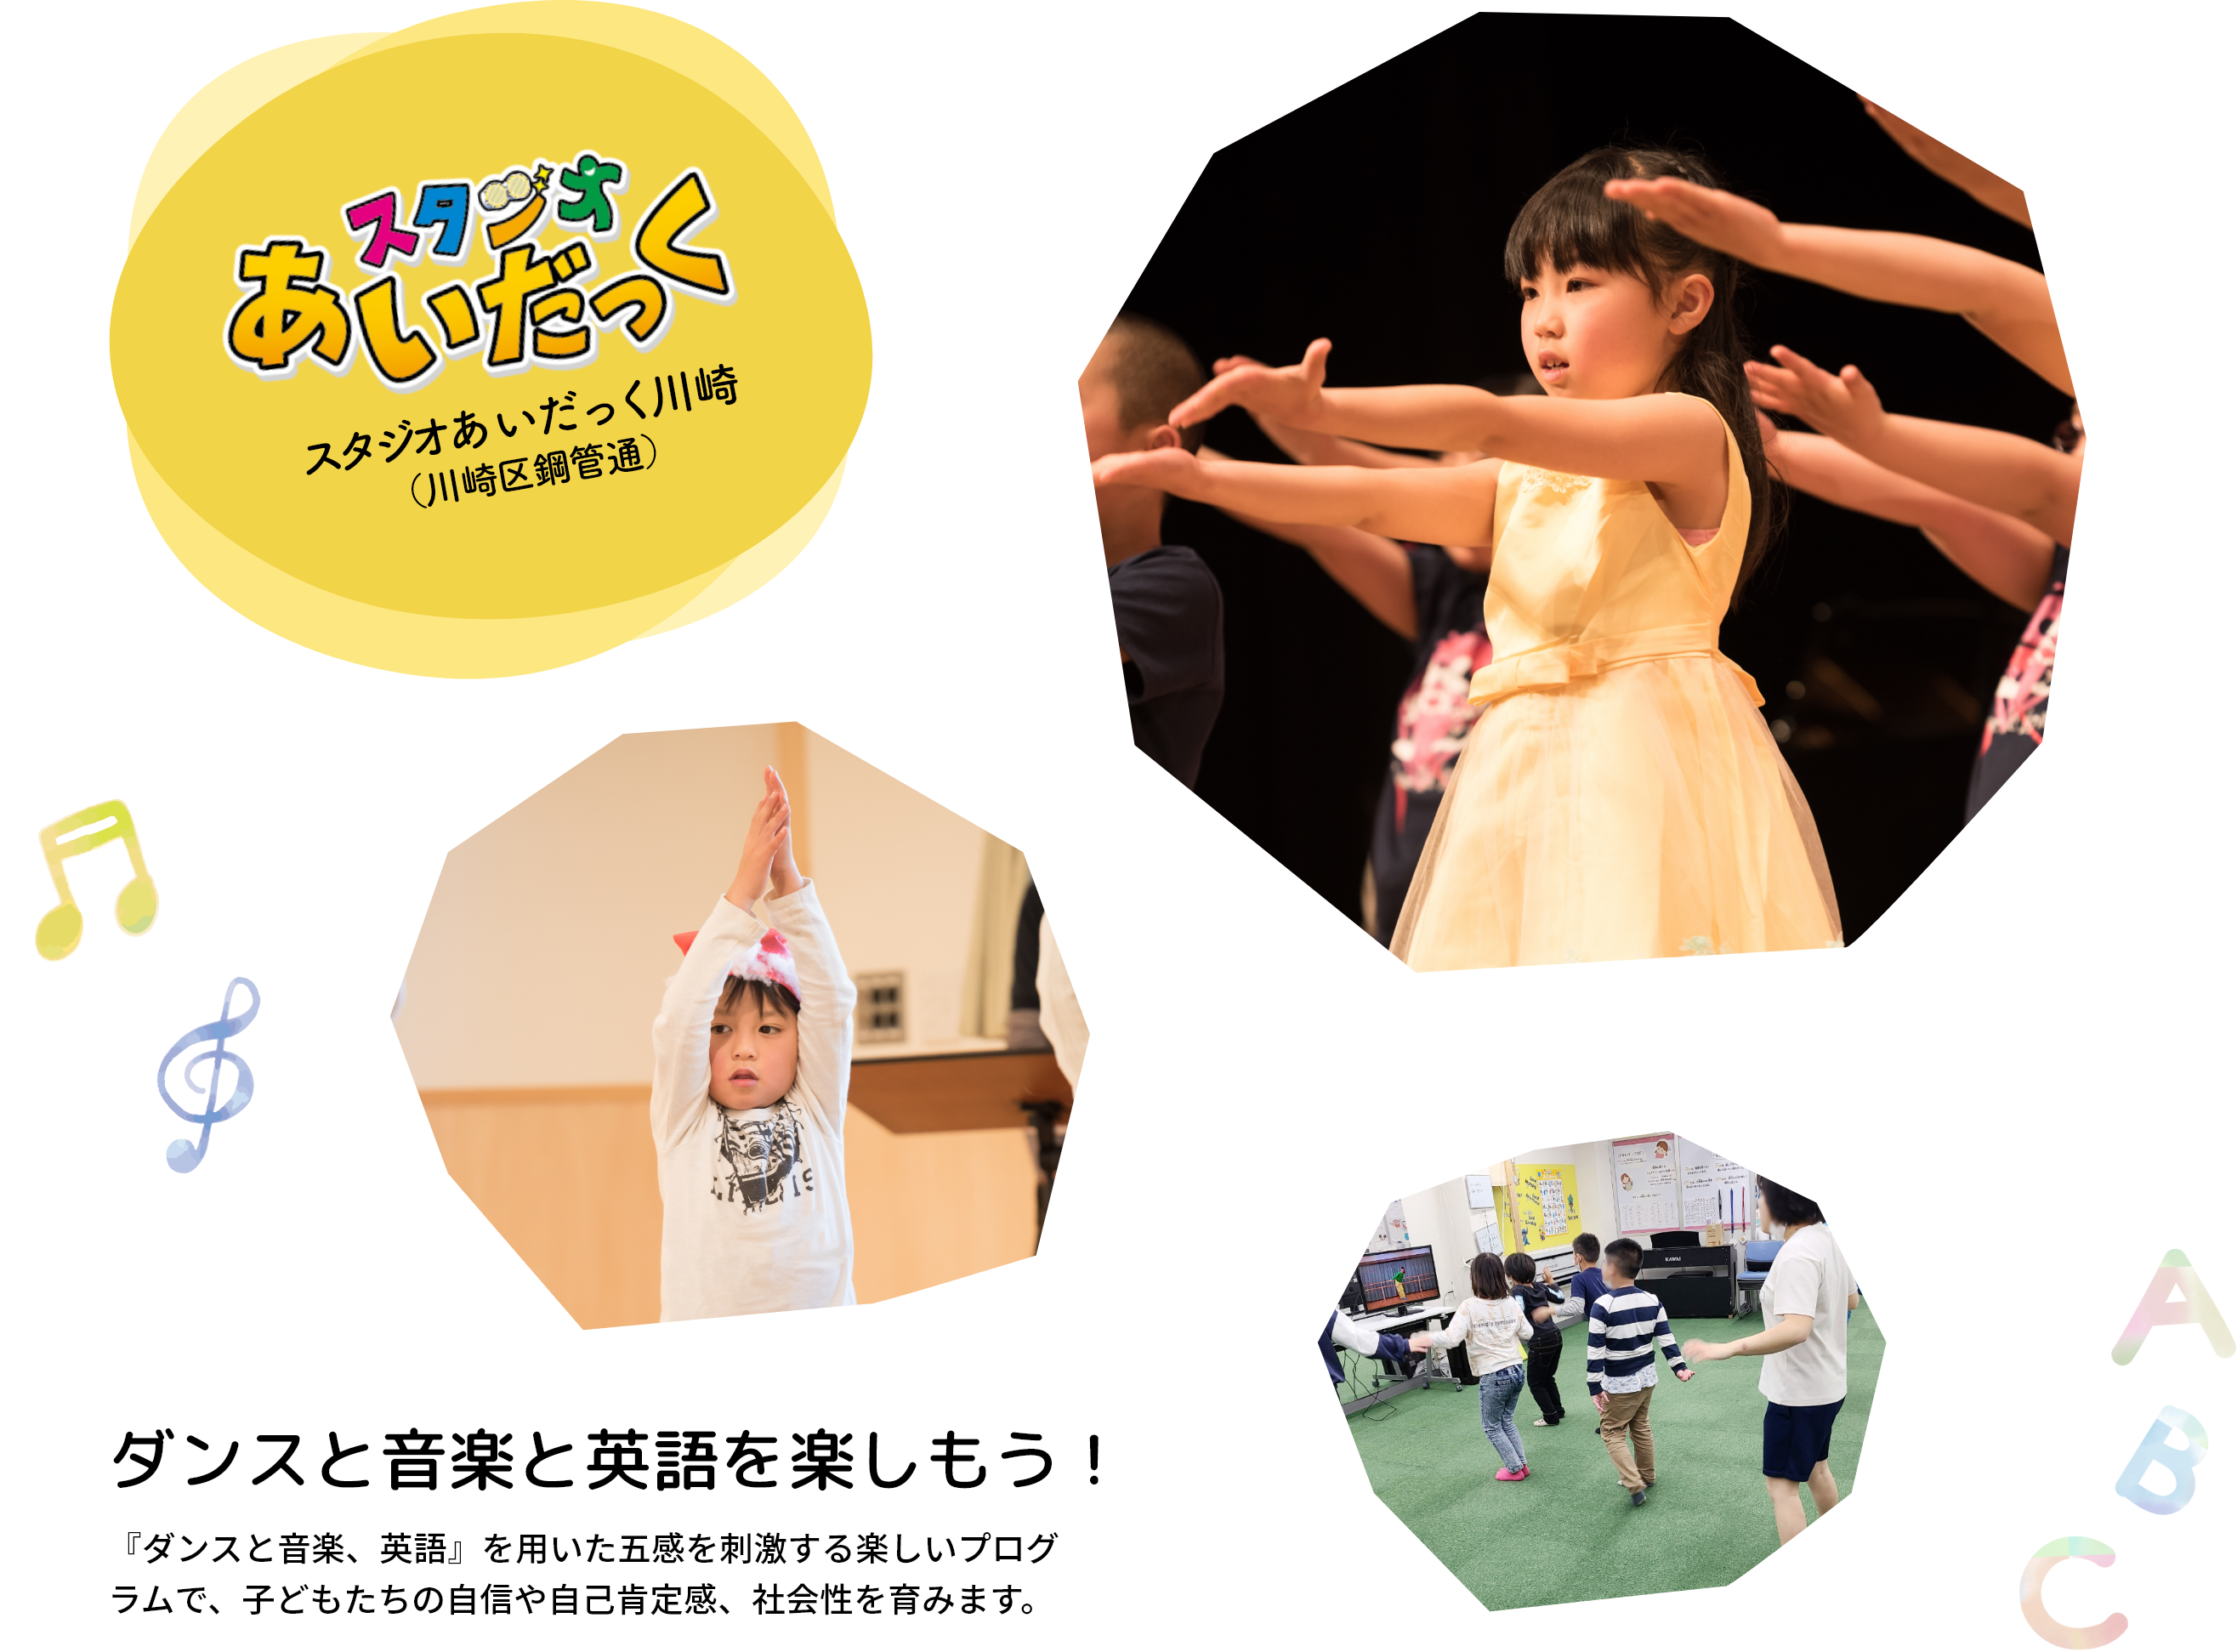 『ダンスと音楽、英語』を用いた五感を刺激する楽しいプログラムで、子どもたちの自信や自己肯定感、社会性を育みます。